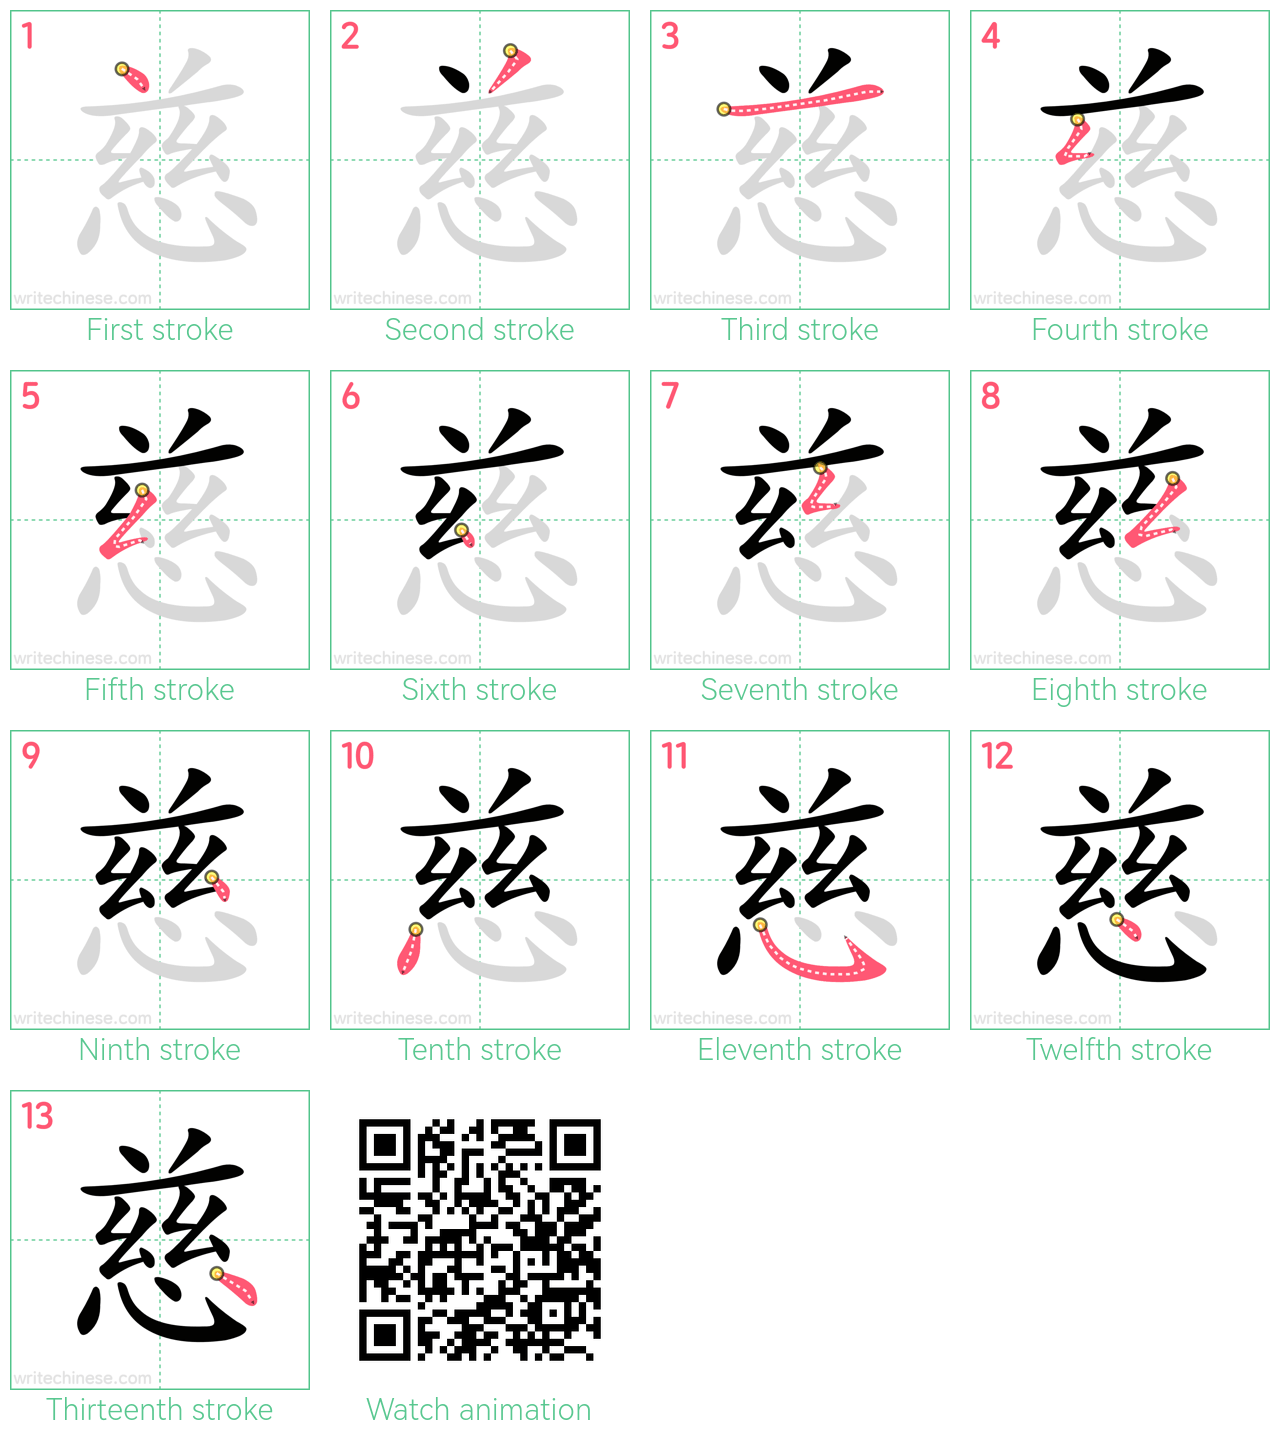 慈 step-by-step stroke order diagrams